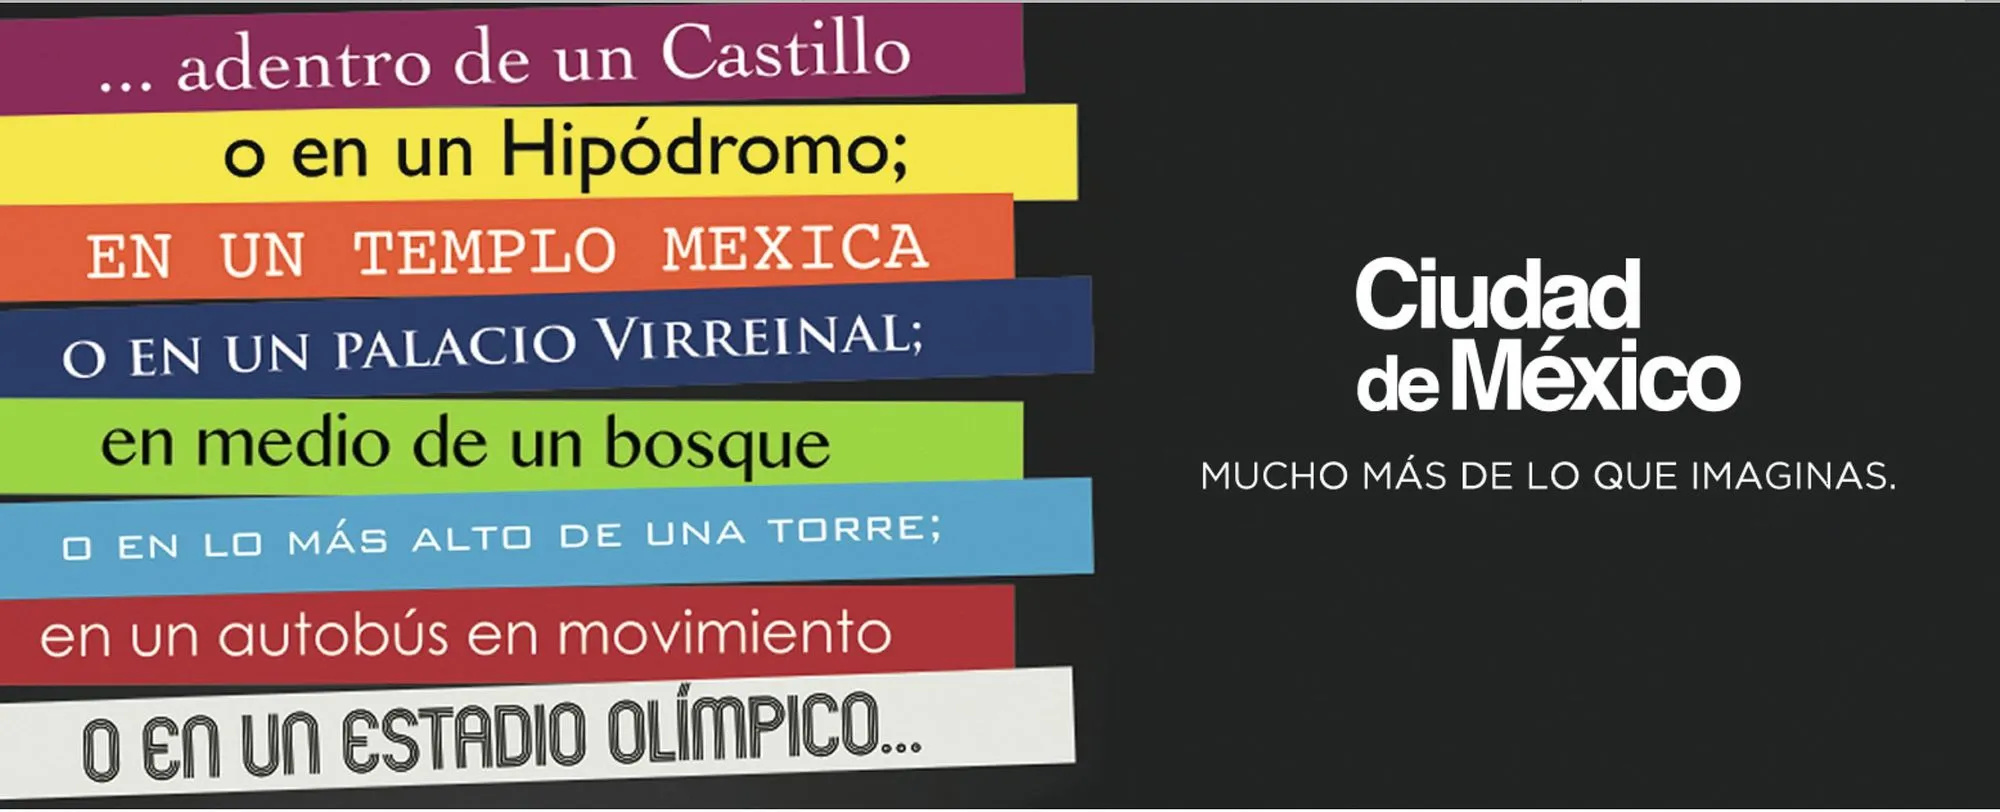 Campaña promocional para el turismo de reuniones, Ciudad de México, 2013-2015.